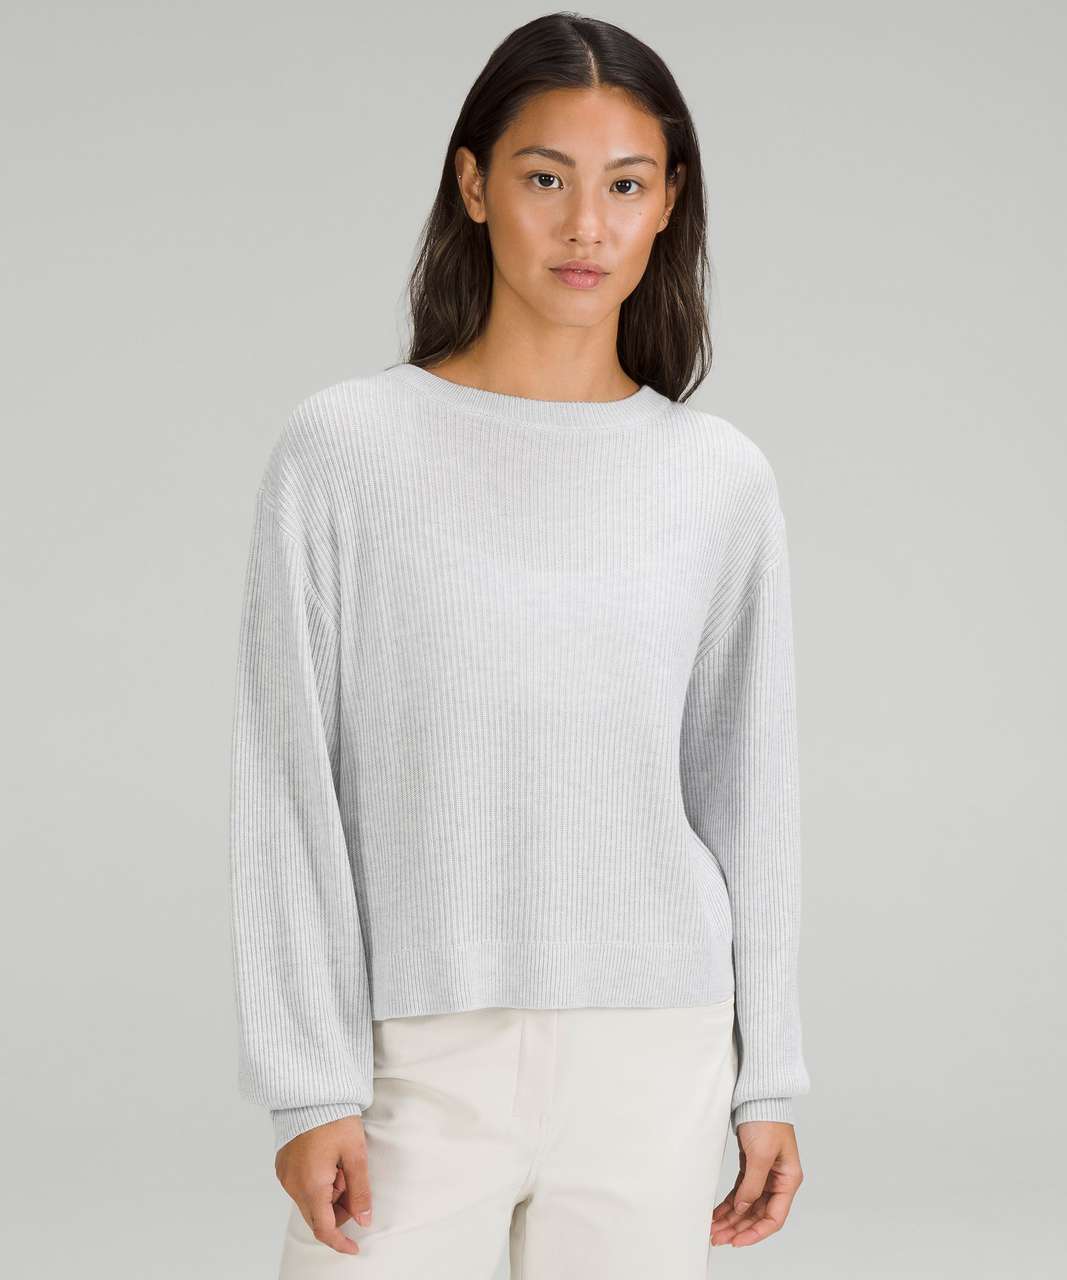 Light Rib Sweater - Grey/White